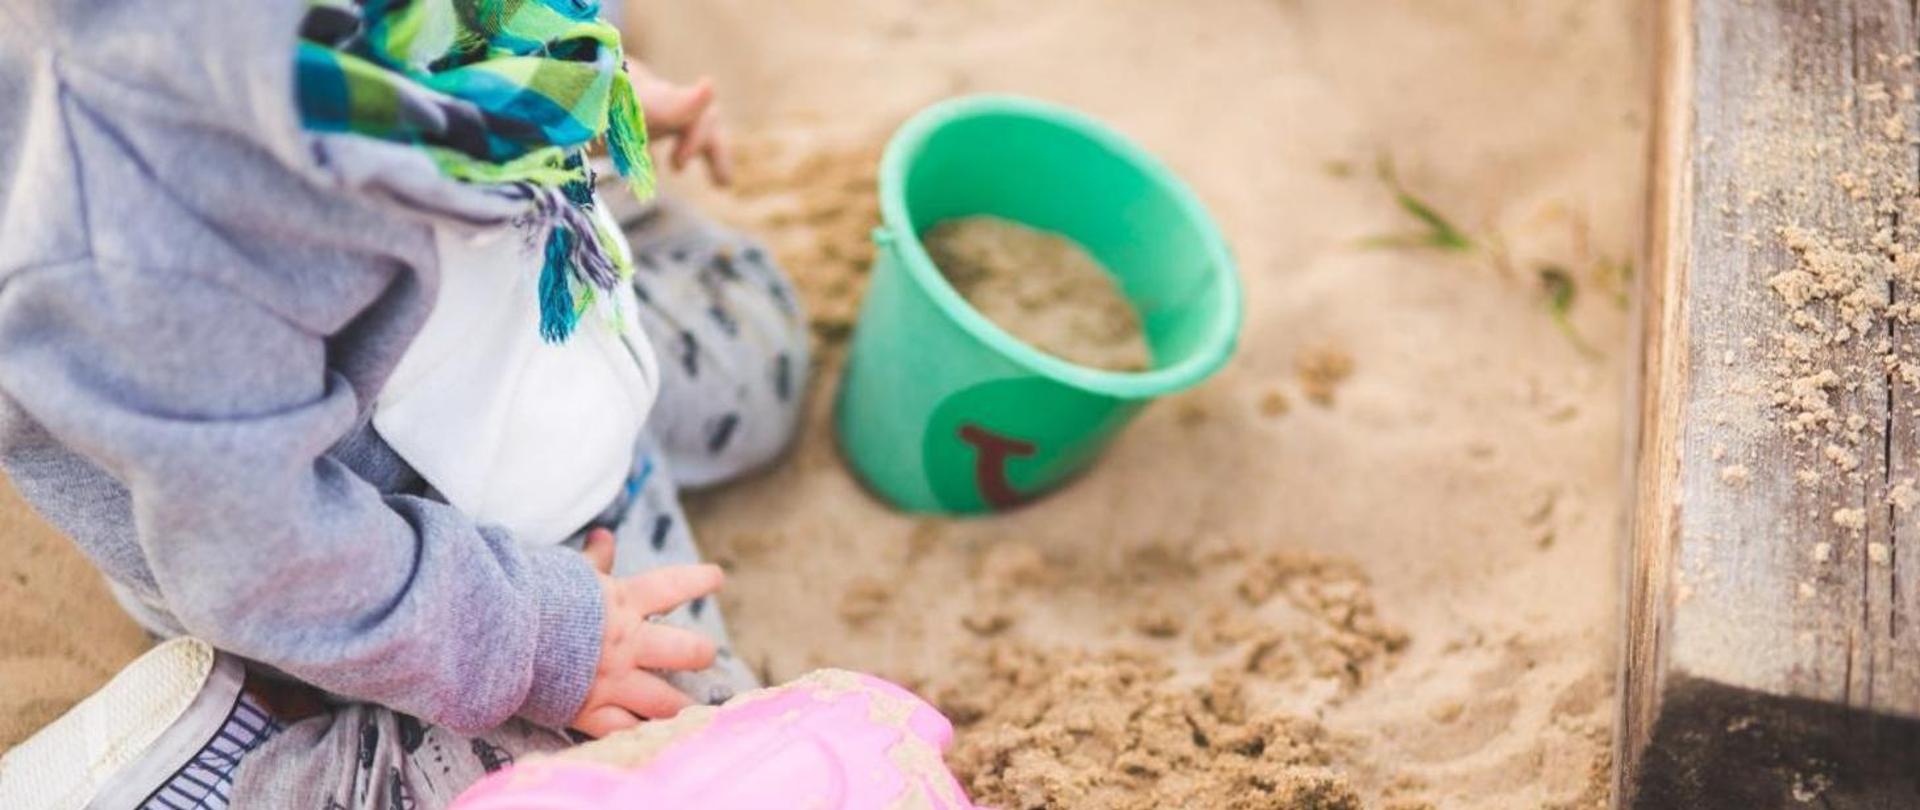 Na fotografii widzimy małe dziecko siedzące na piasku. Obok dziecka stoi zielone wiaderko z czerwonym obrazkiem na przedniej stronie, które jest częściowo wypełnione piaskiem. W tle rozpoznajemy drewnianą krawędź, być może jest to fragment piaskownicy. Zdjęcie skupia się na małym fragmencie przestrzeni, skupiając uwagę na czynnościach dziecka i teksturze piasku.